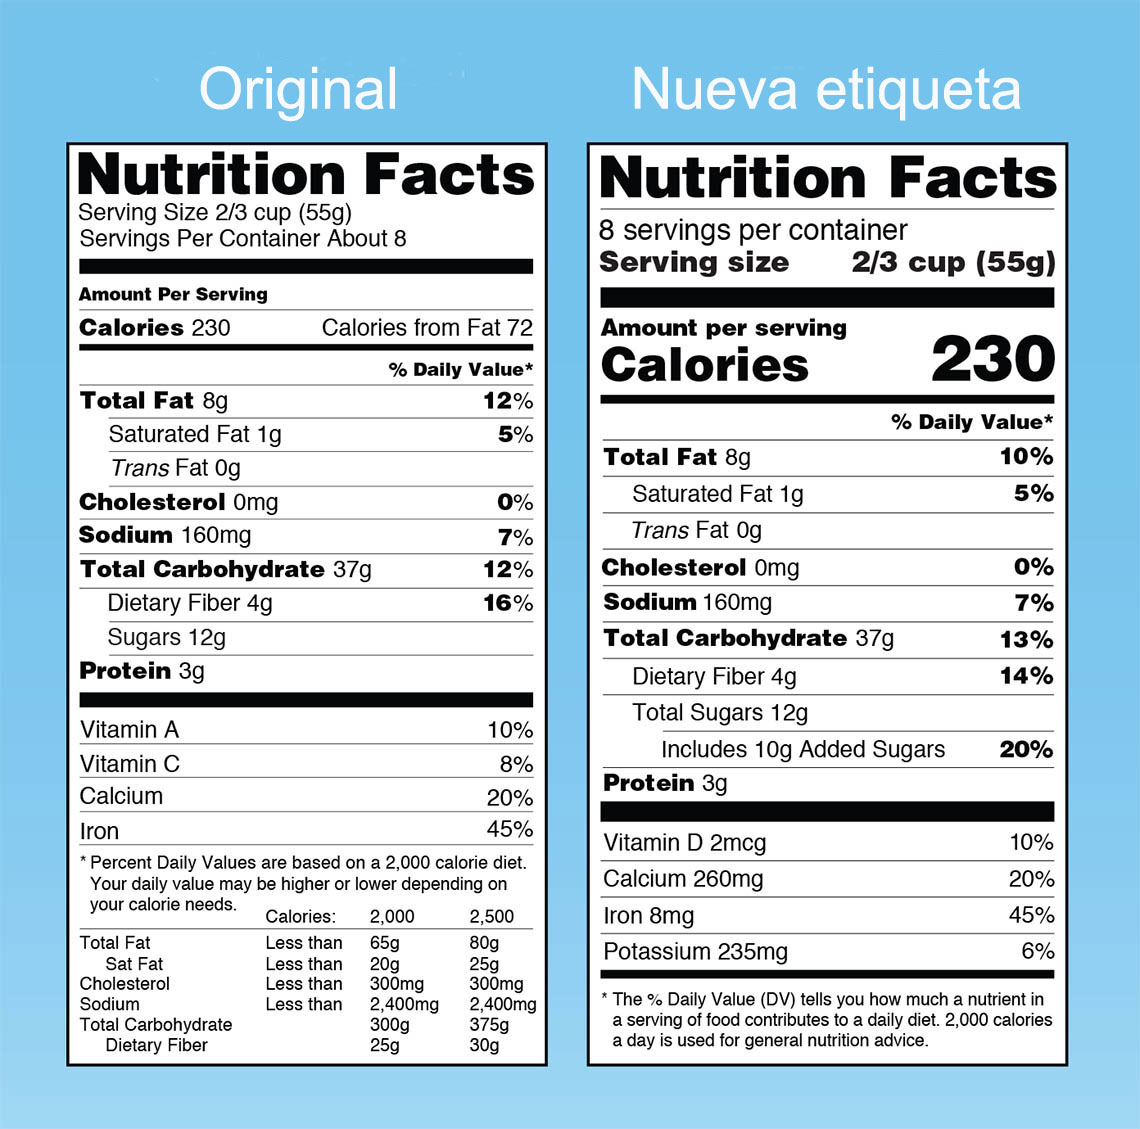 Una comparación de la etiqueta nutricional original y la nueva